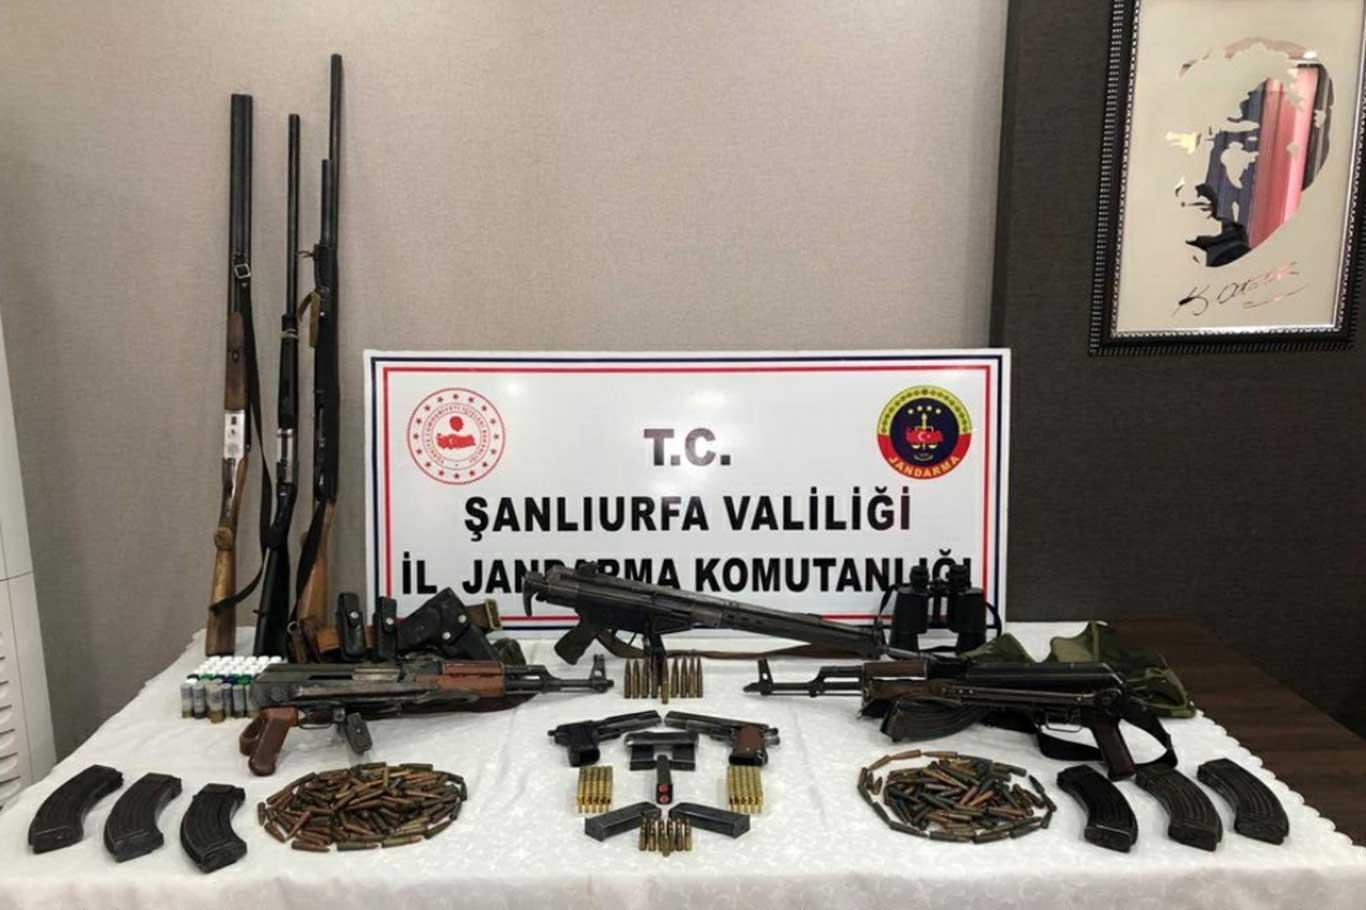 Şanlıurfa'da silah kaçakçılığı yapan 3 şüpheli gözaltına alındı